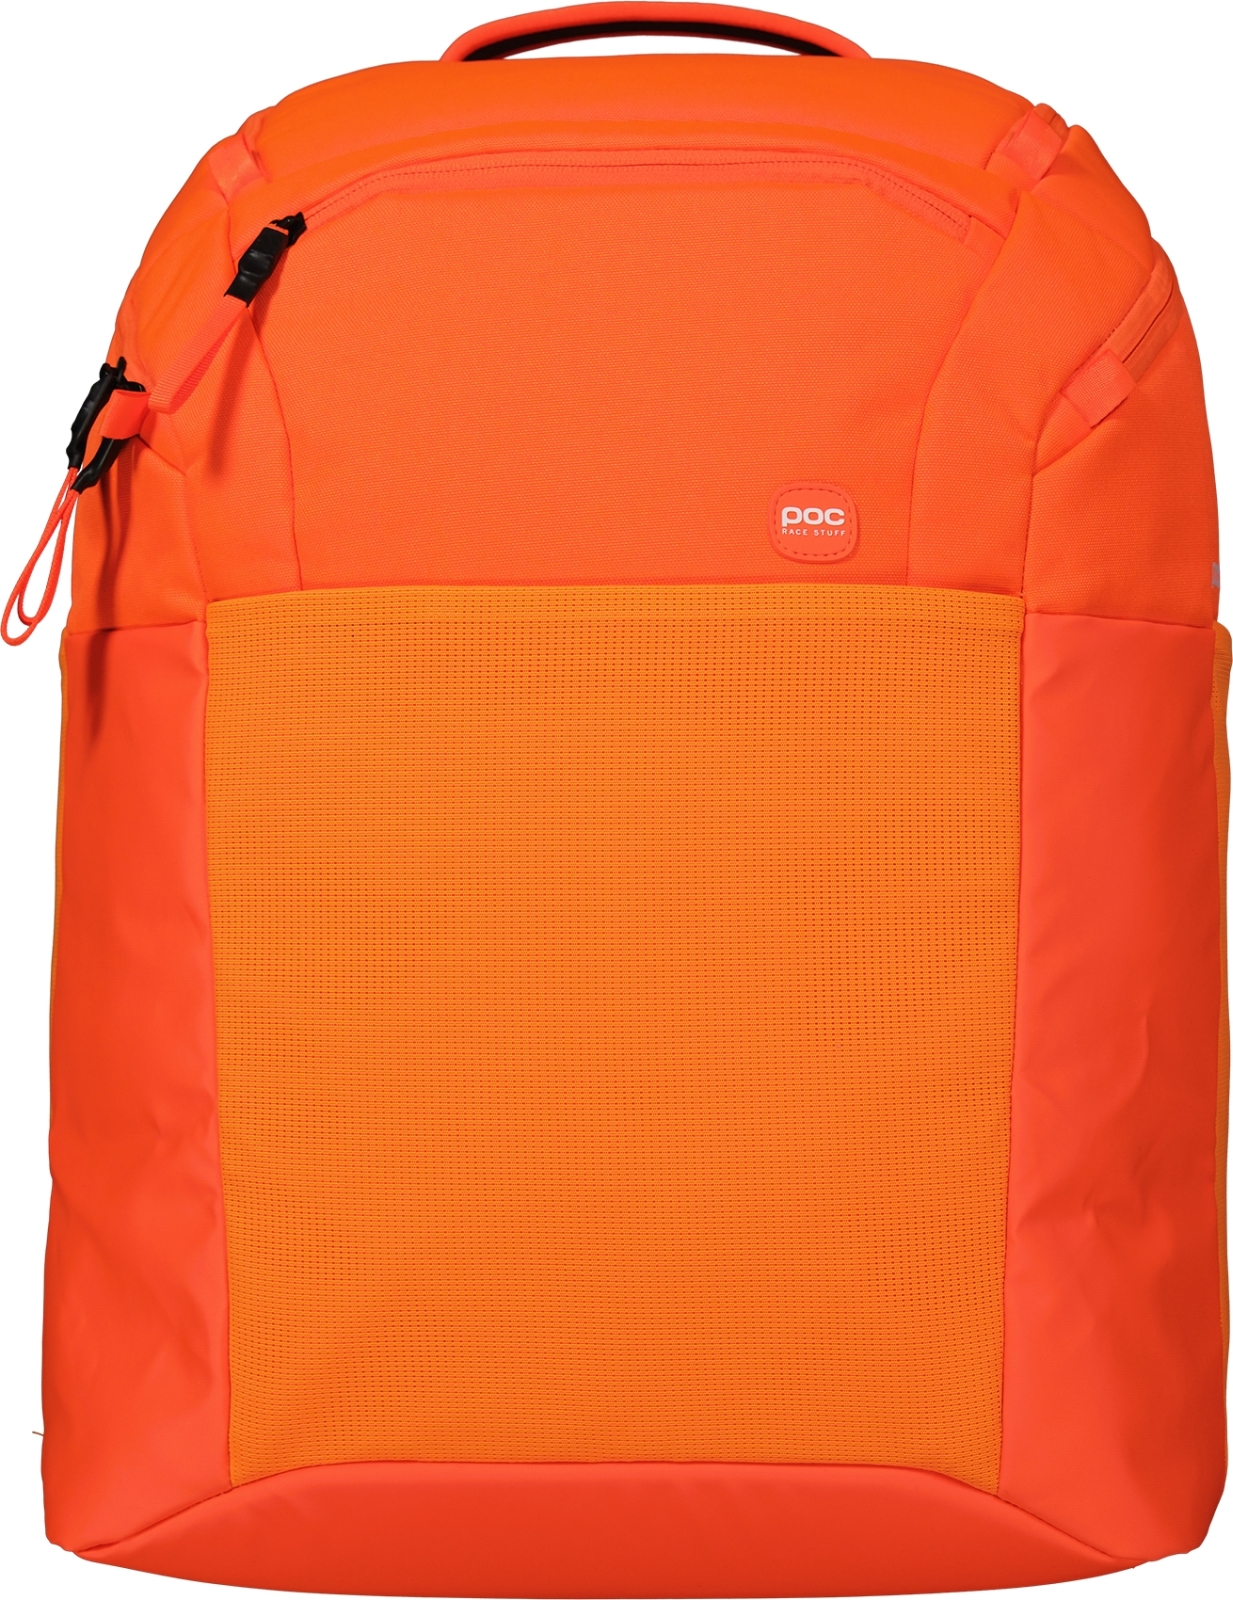 E-shop POC Race Backpack 50L - Fluorescent Orange uni